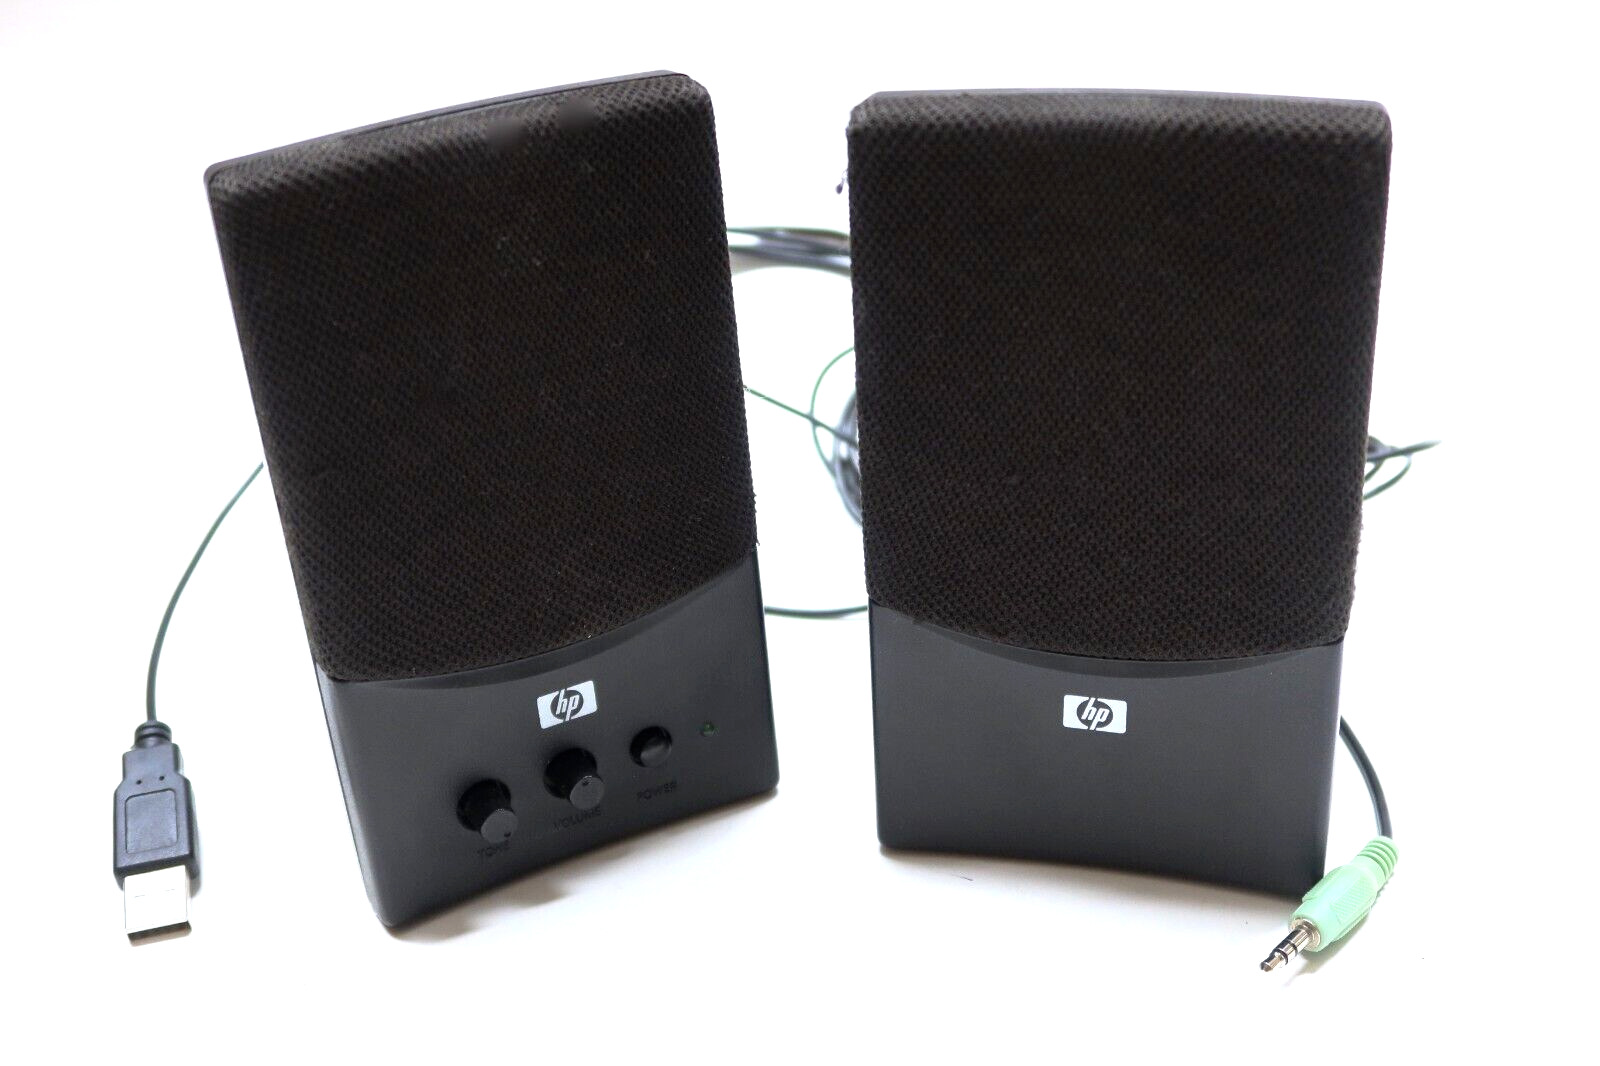 HP USB Black Multimedia Computer Speakers UC-230 Adjustable Volume & Tone